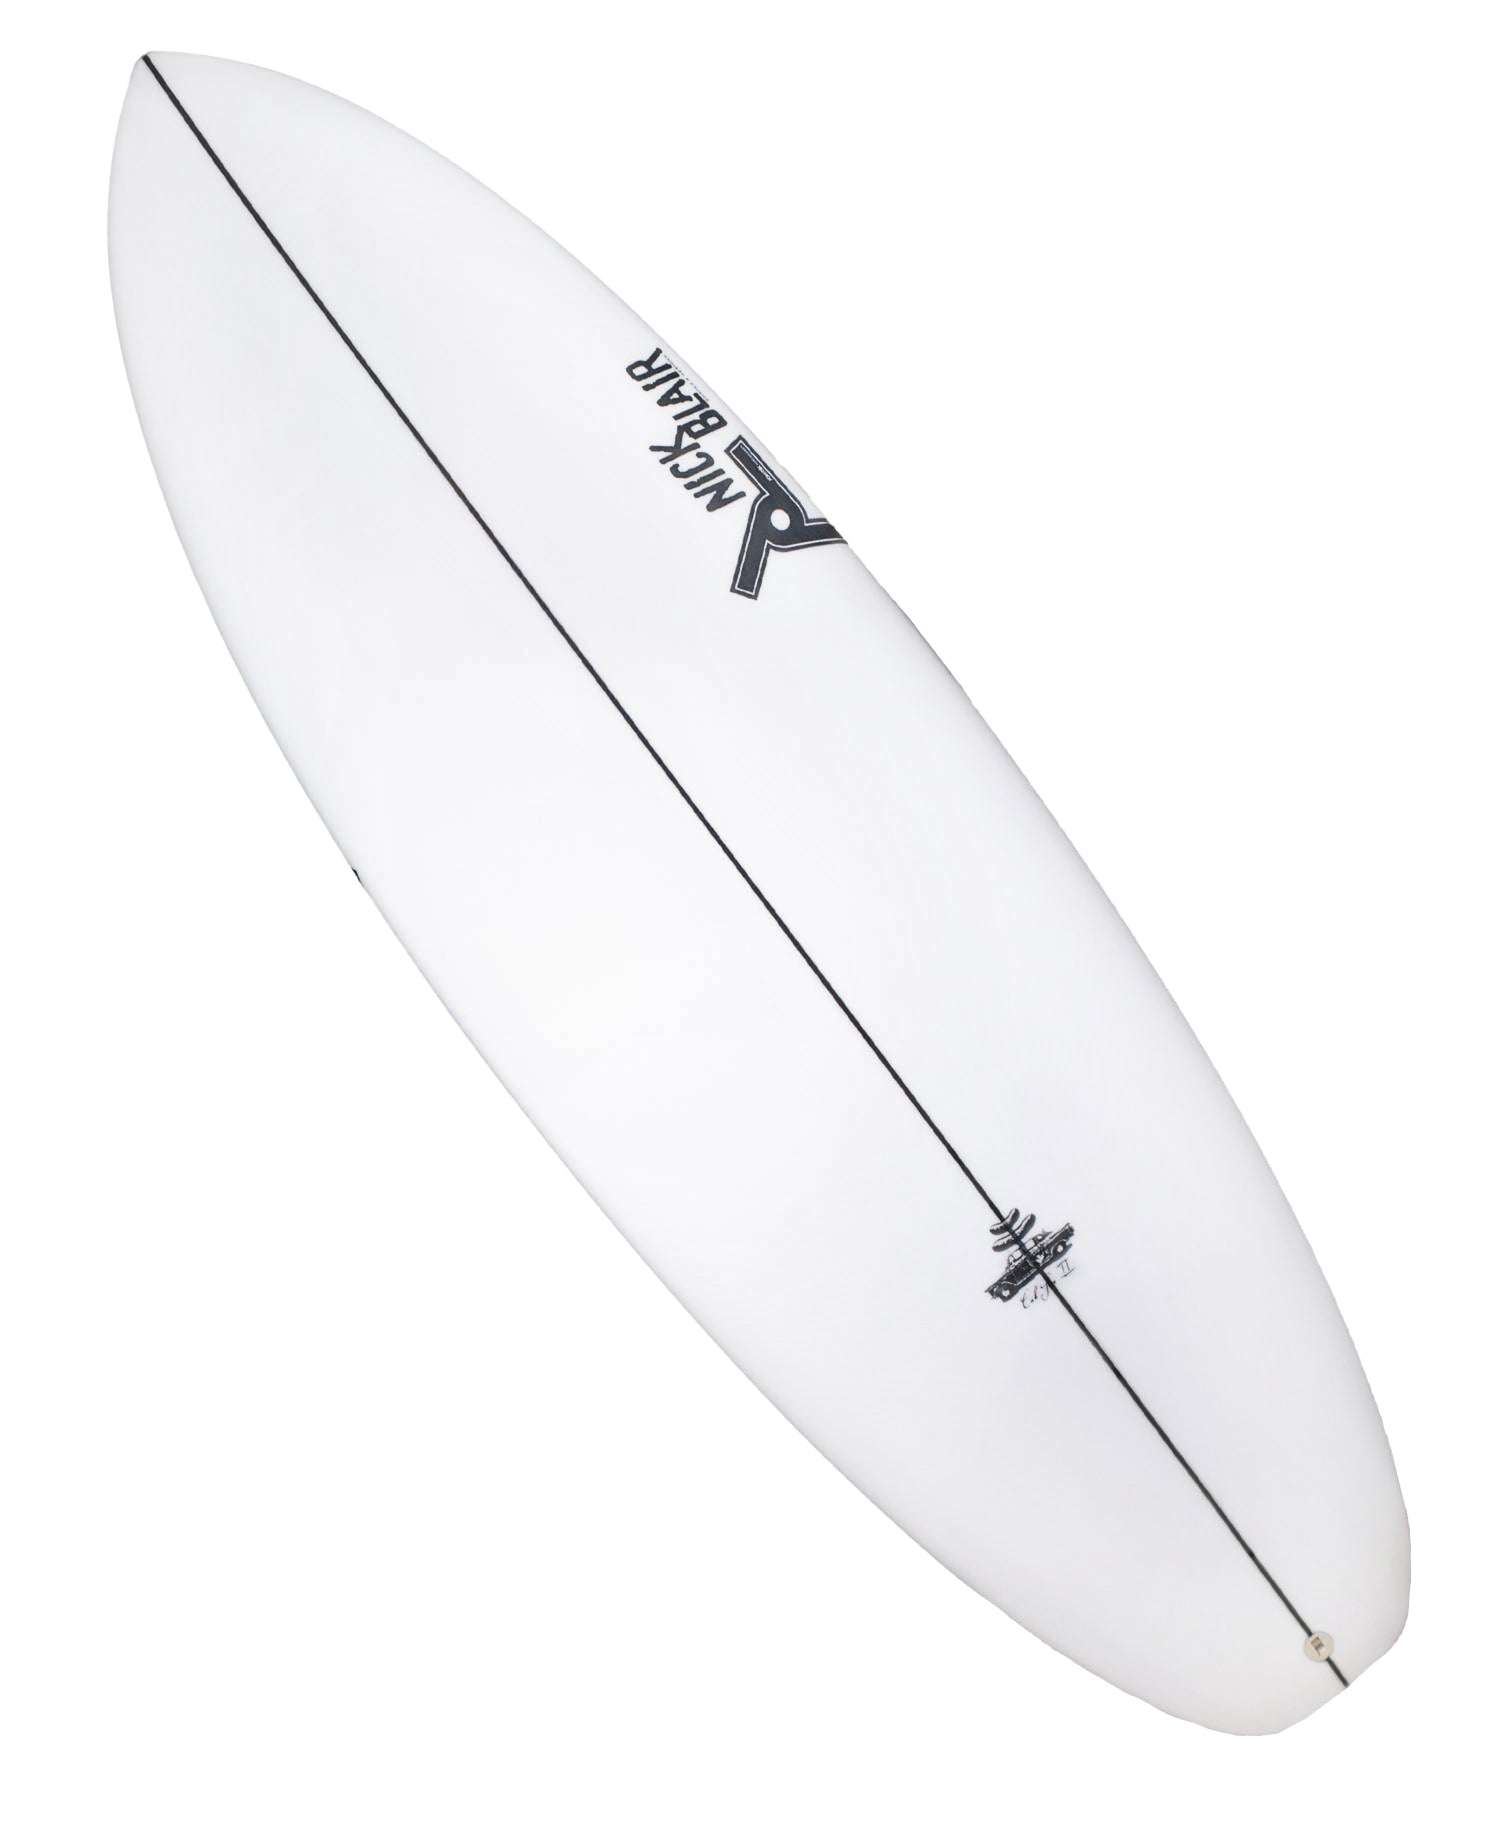 Joistik Surfboards by Australian Shaper Nick Blair – Sideways